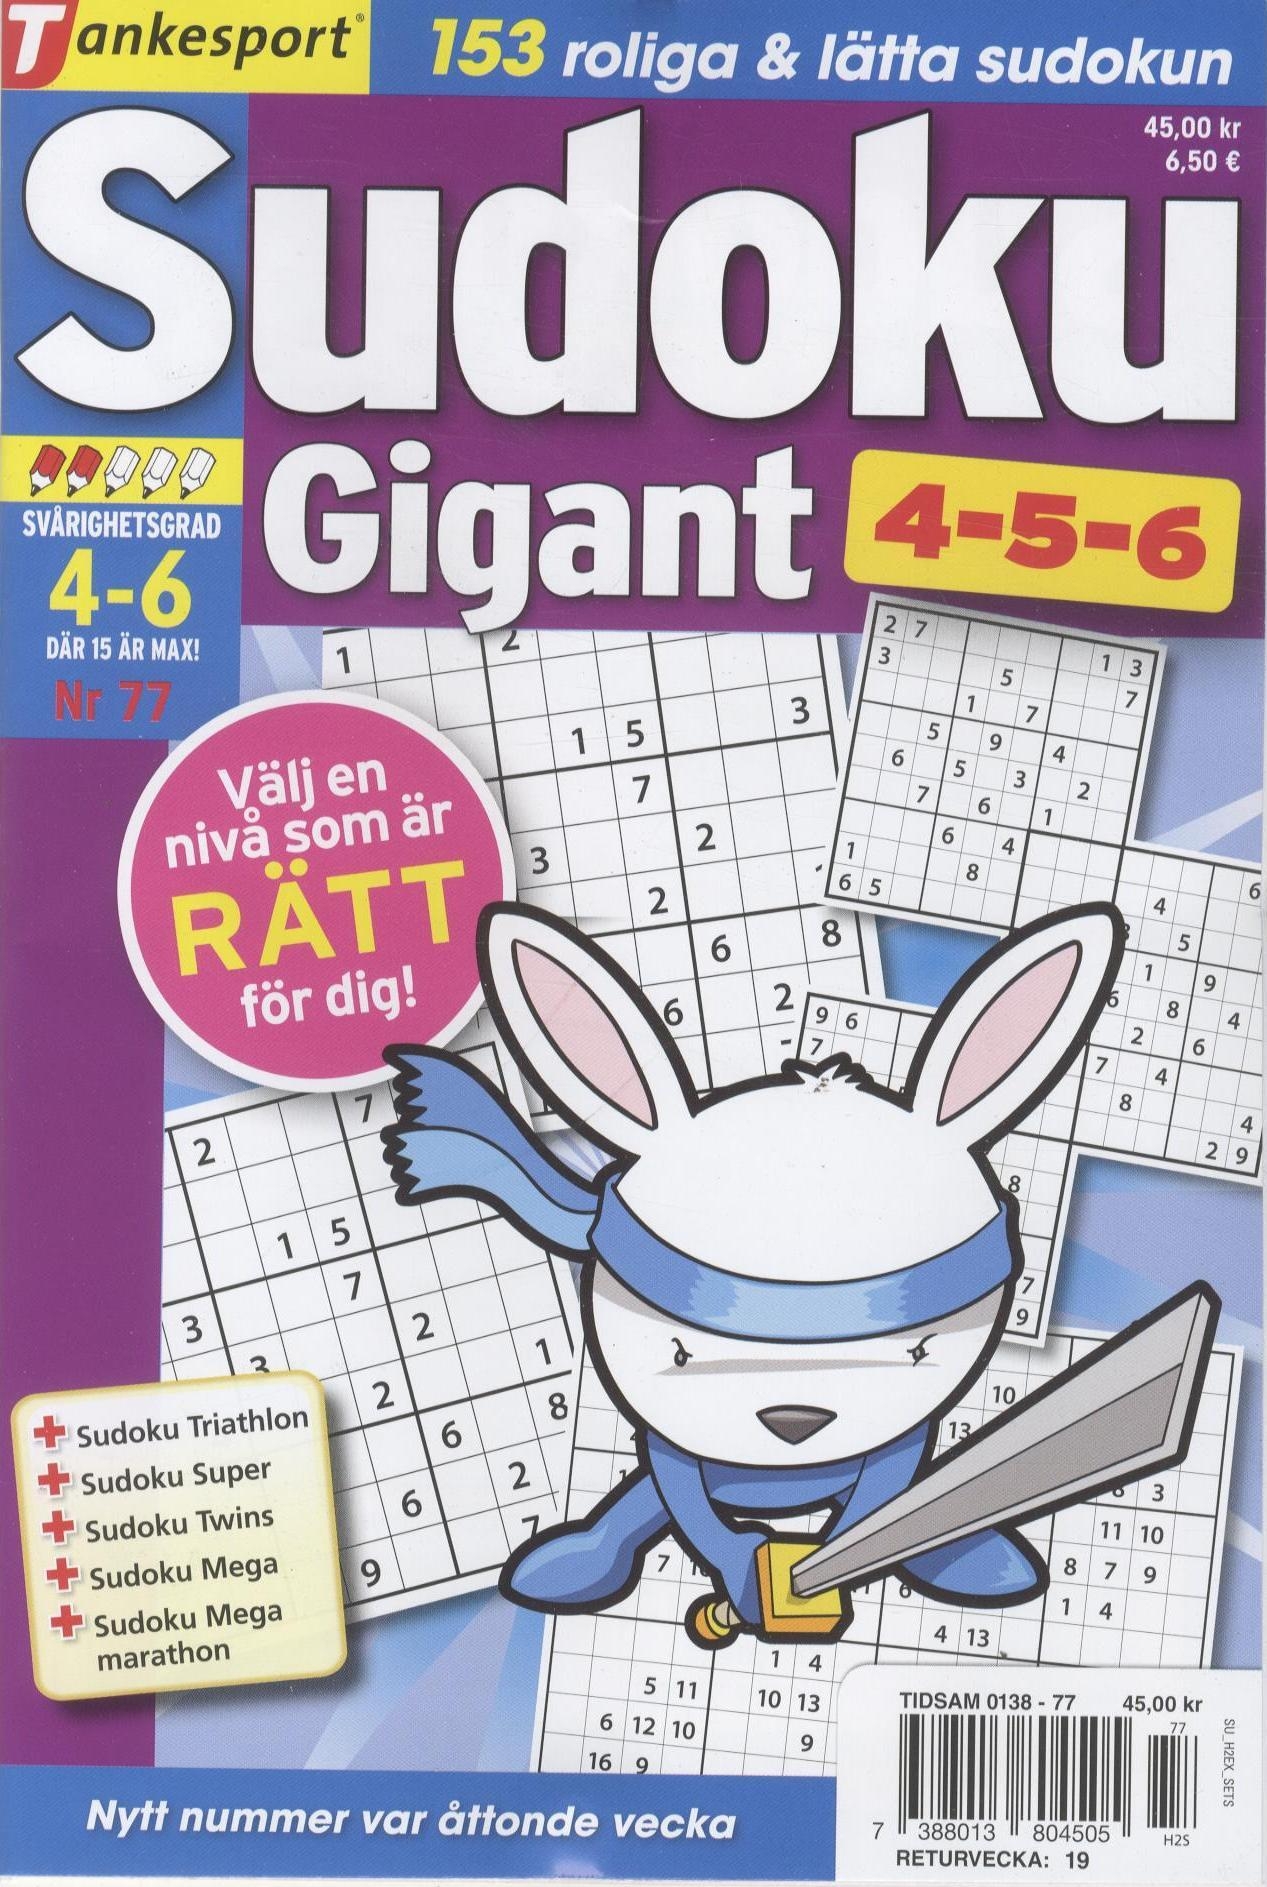 TS Sudoku 4-5-6 Gigant